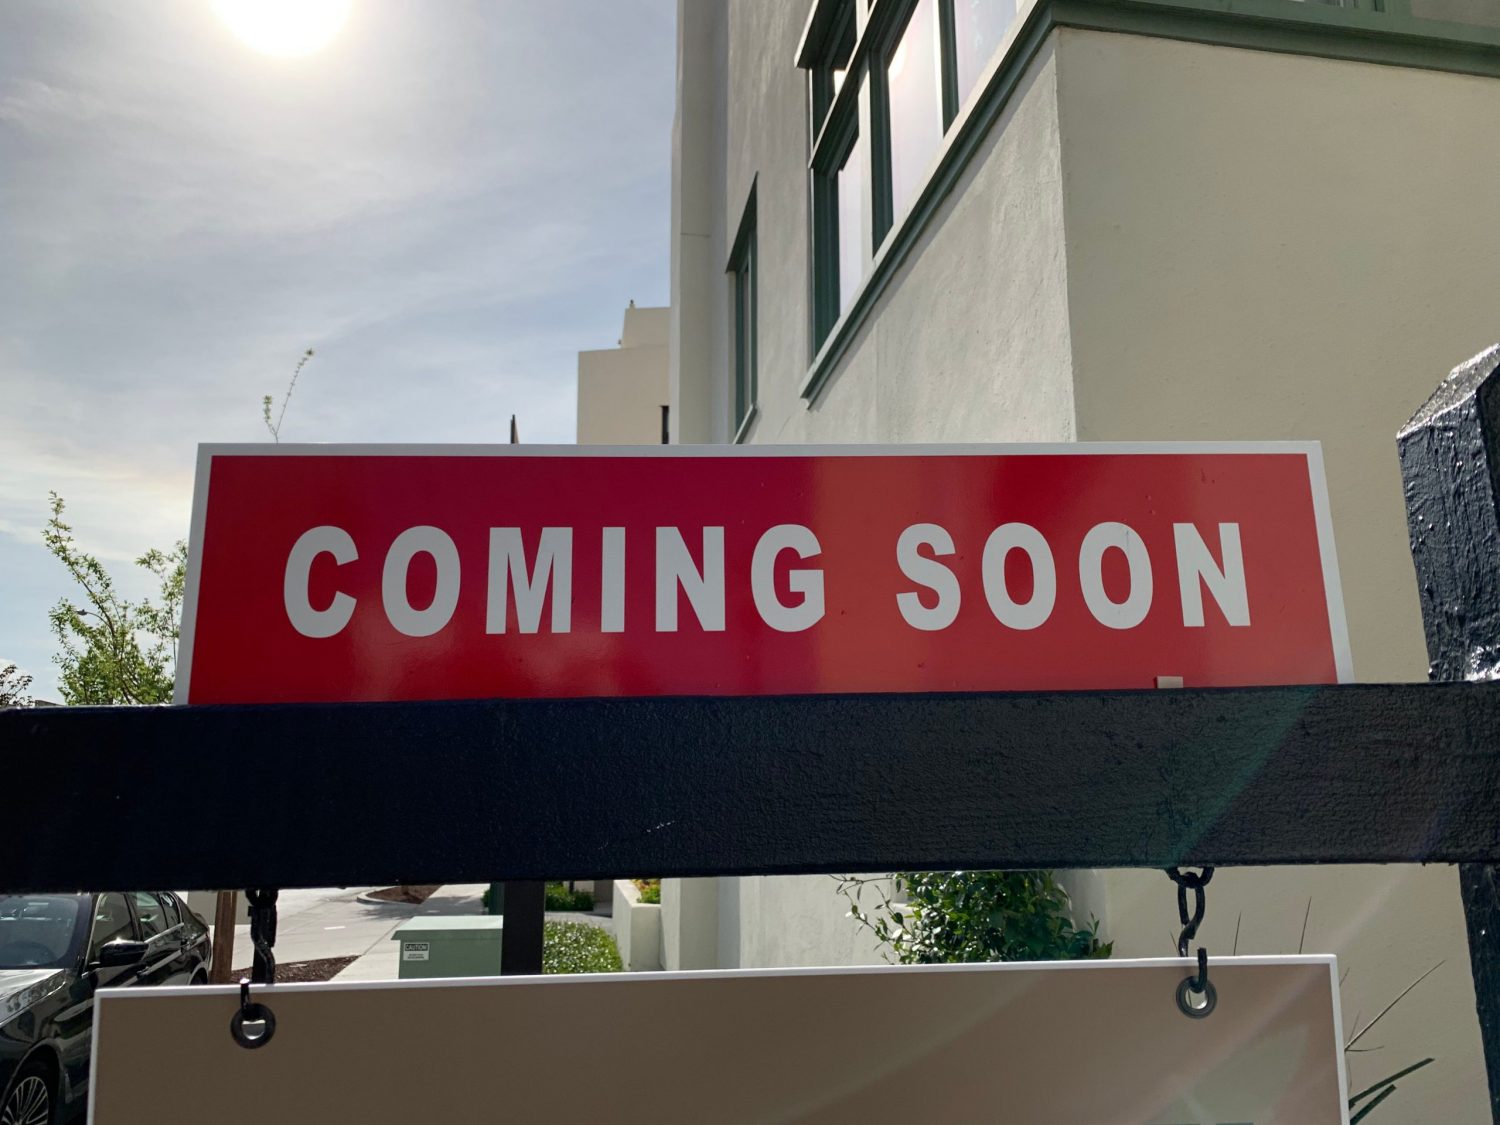 MLS “Coming Soon” Updates